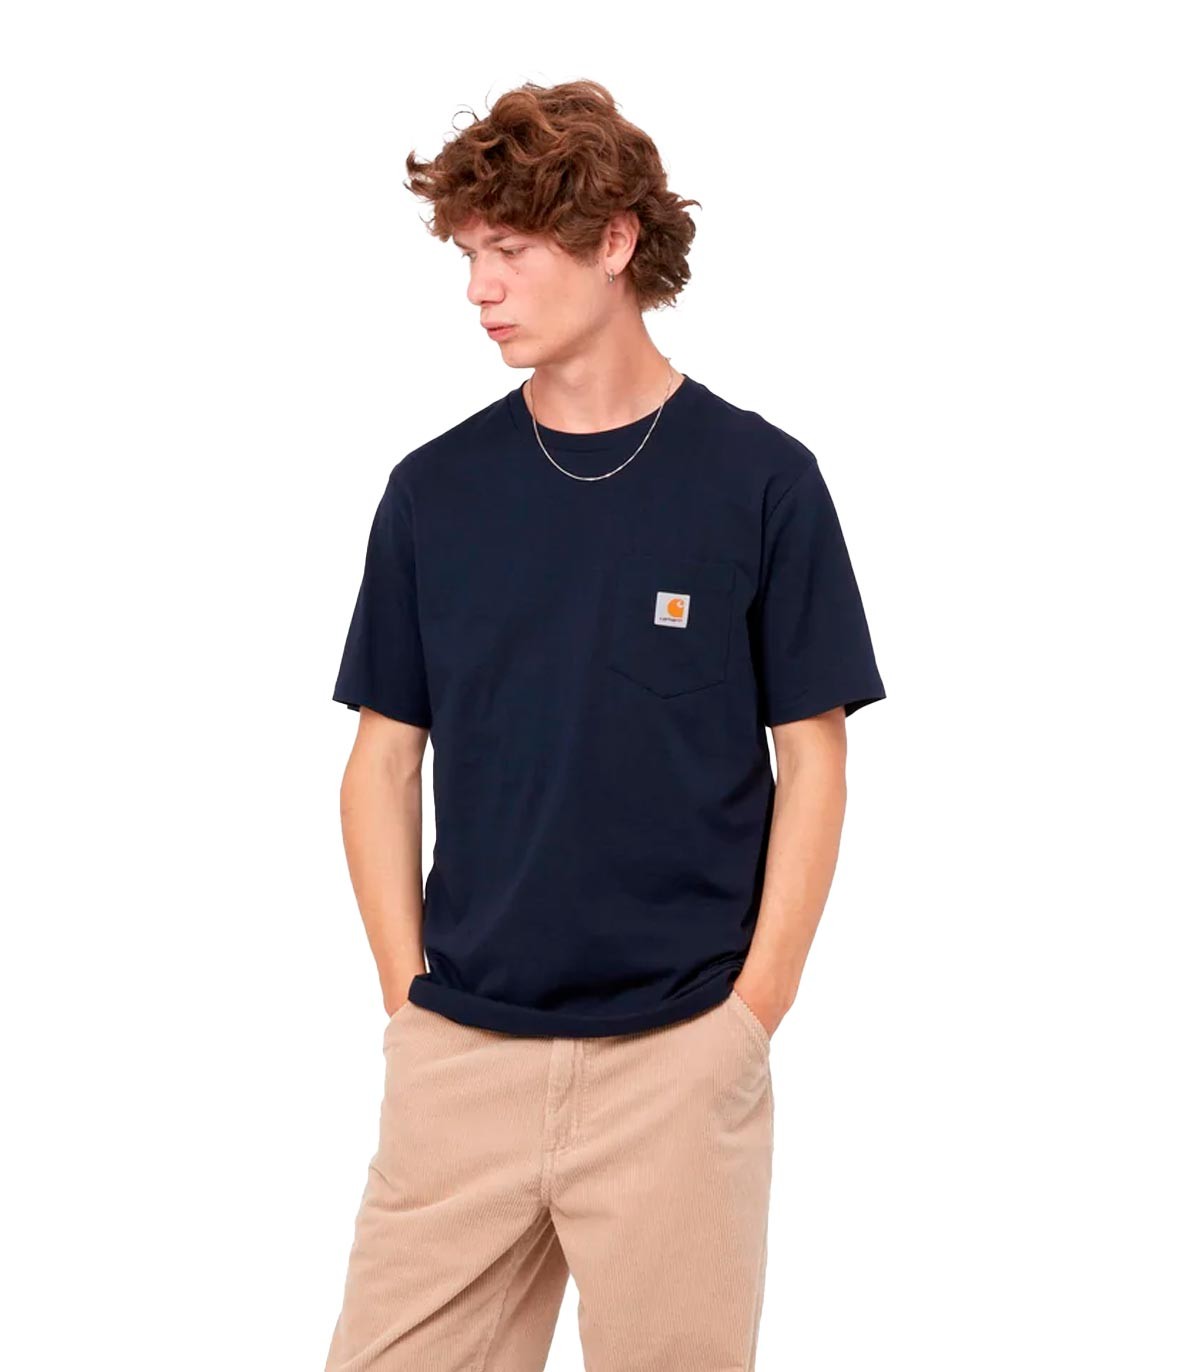 Carhartt Wip - Camiseta con Bolsillo y Logotipo - Azul